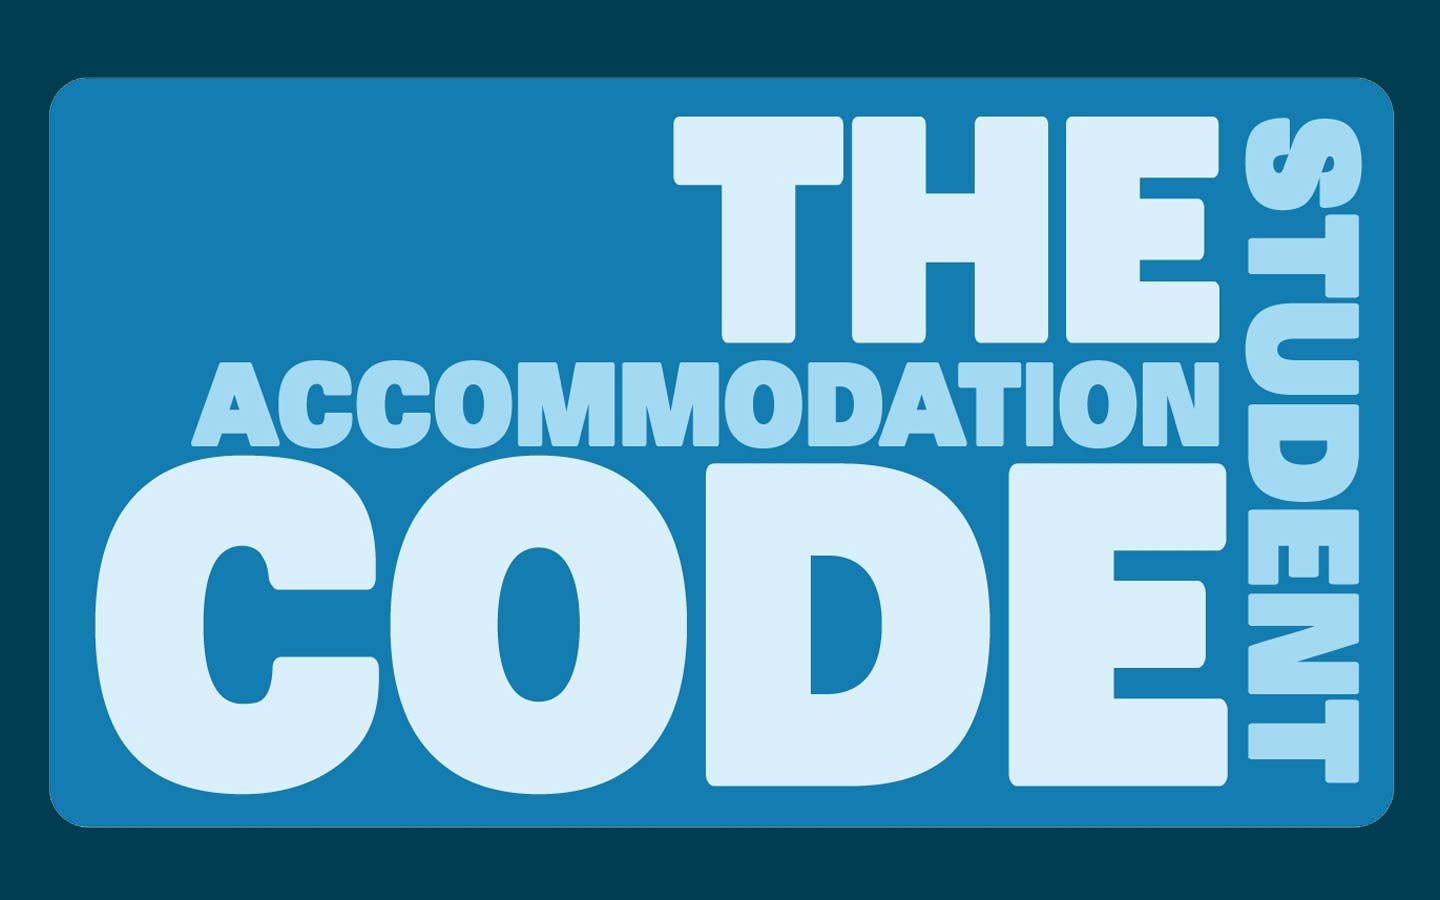 UUK student accommodation code logo